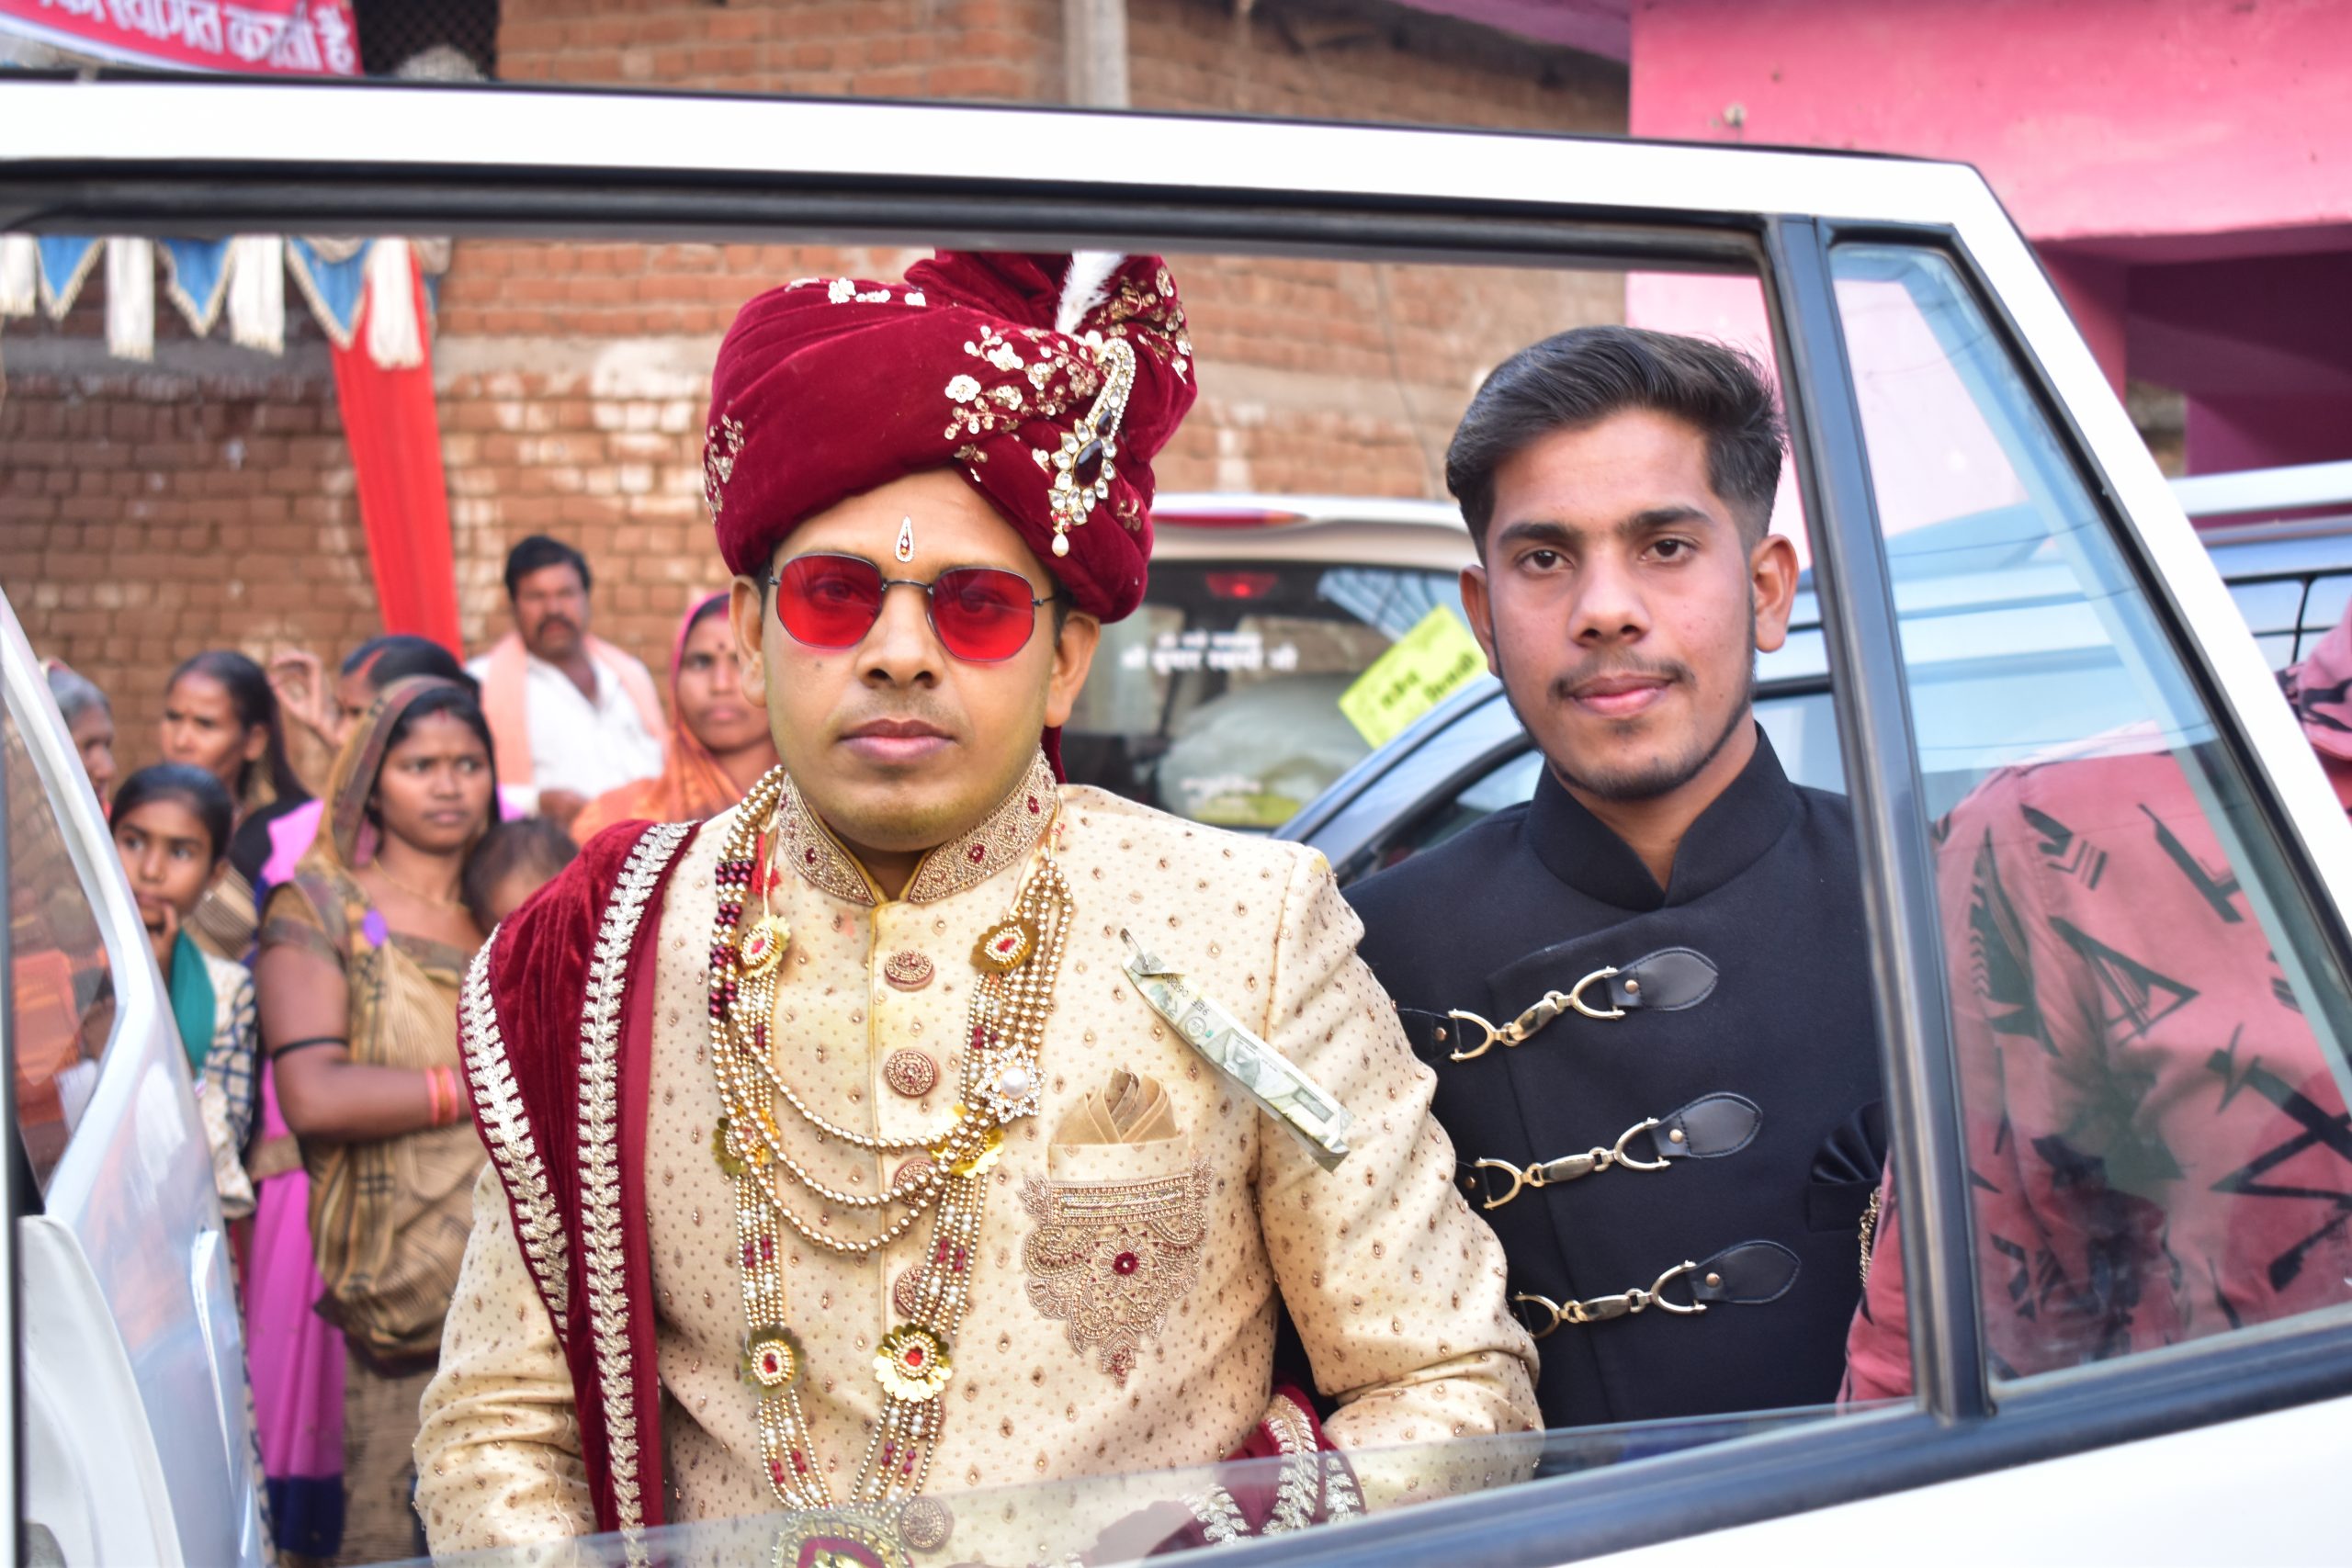 An Indian bridegroom